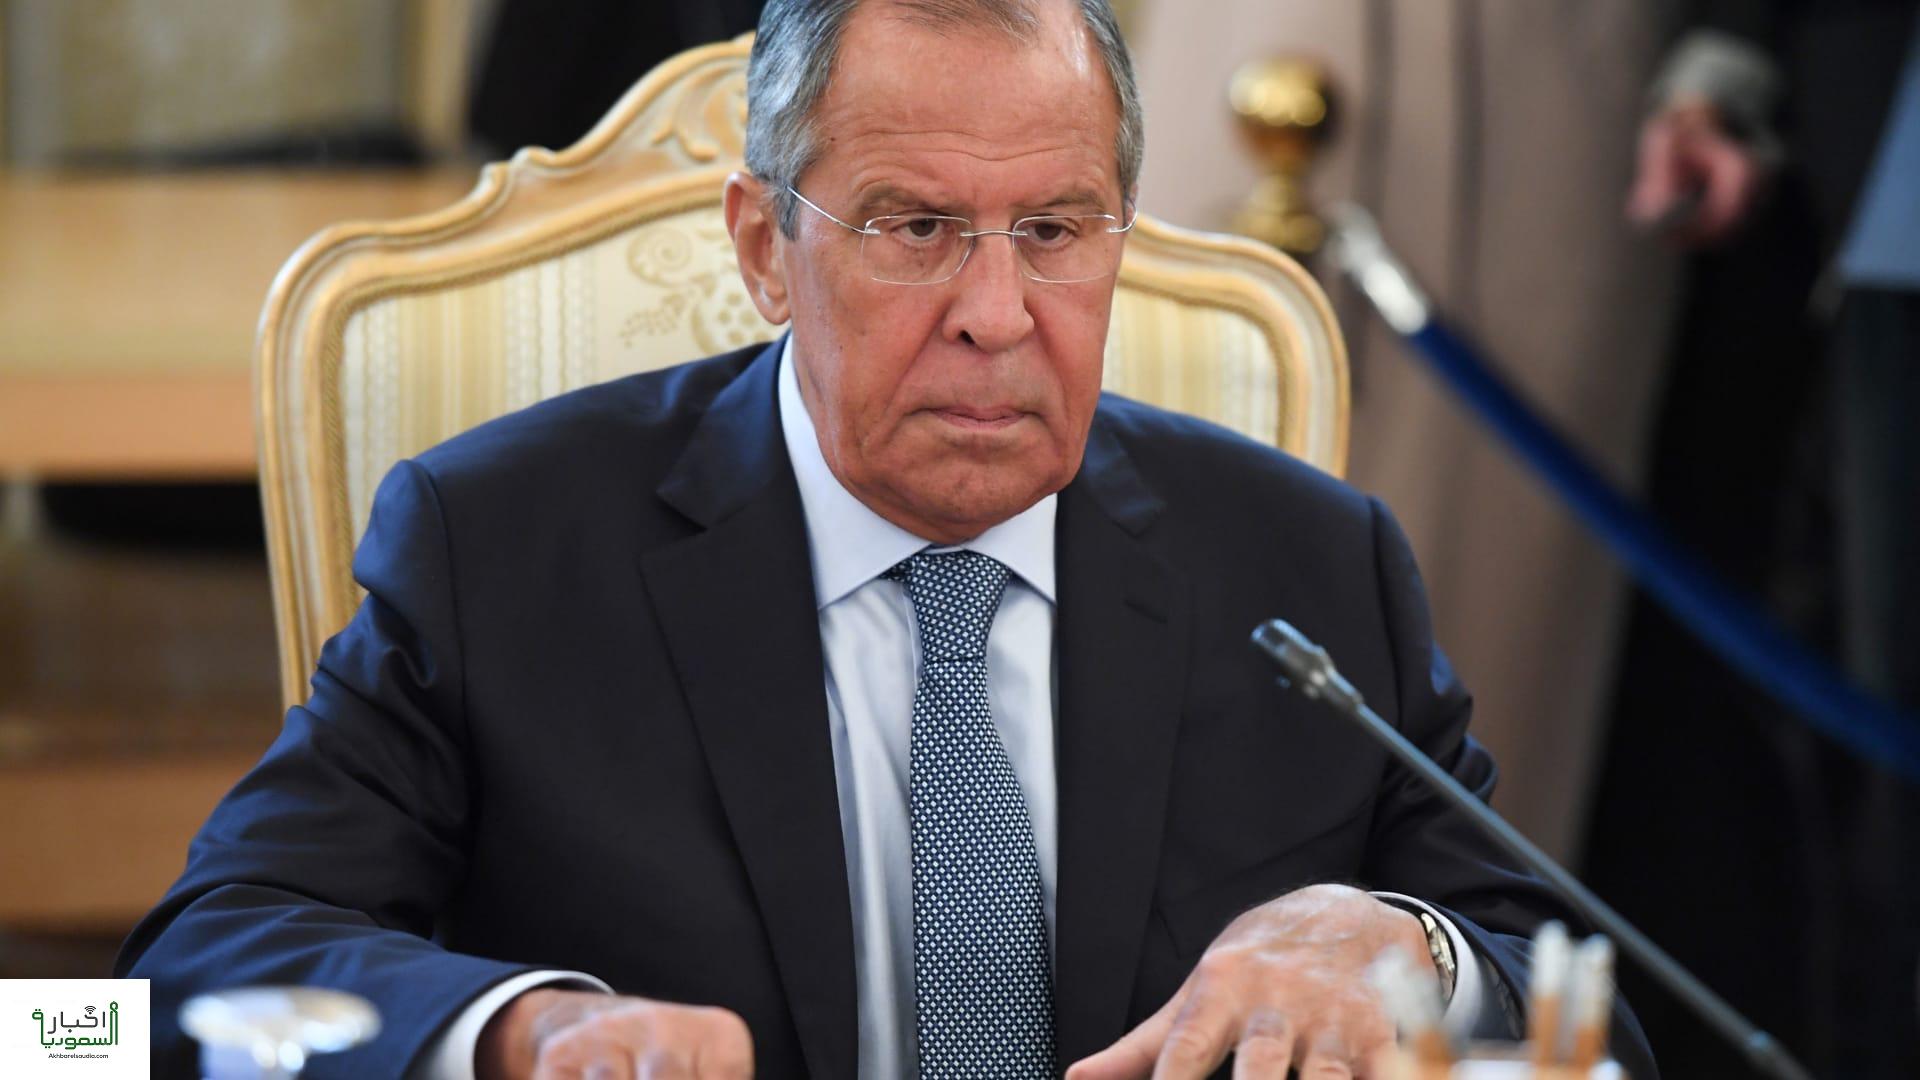 وزير الخارجية الروسي يؤكد على ضرورة ضبط النفس فيما يتعلق بالمجال النووي